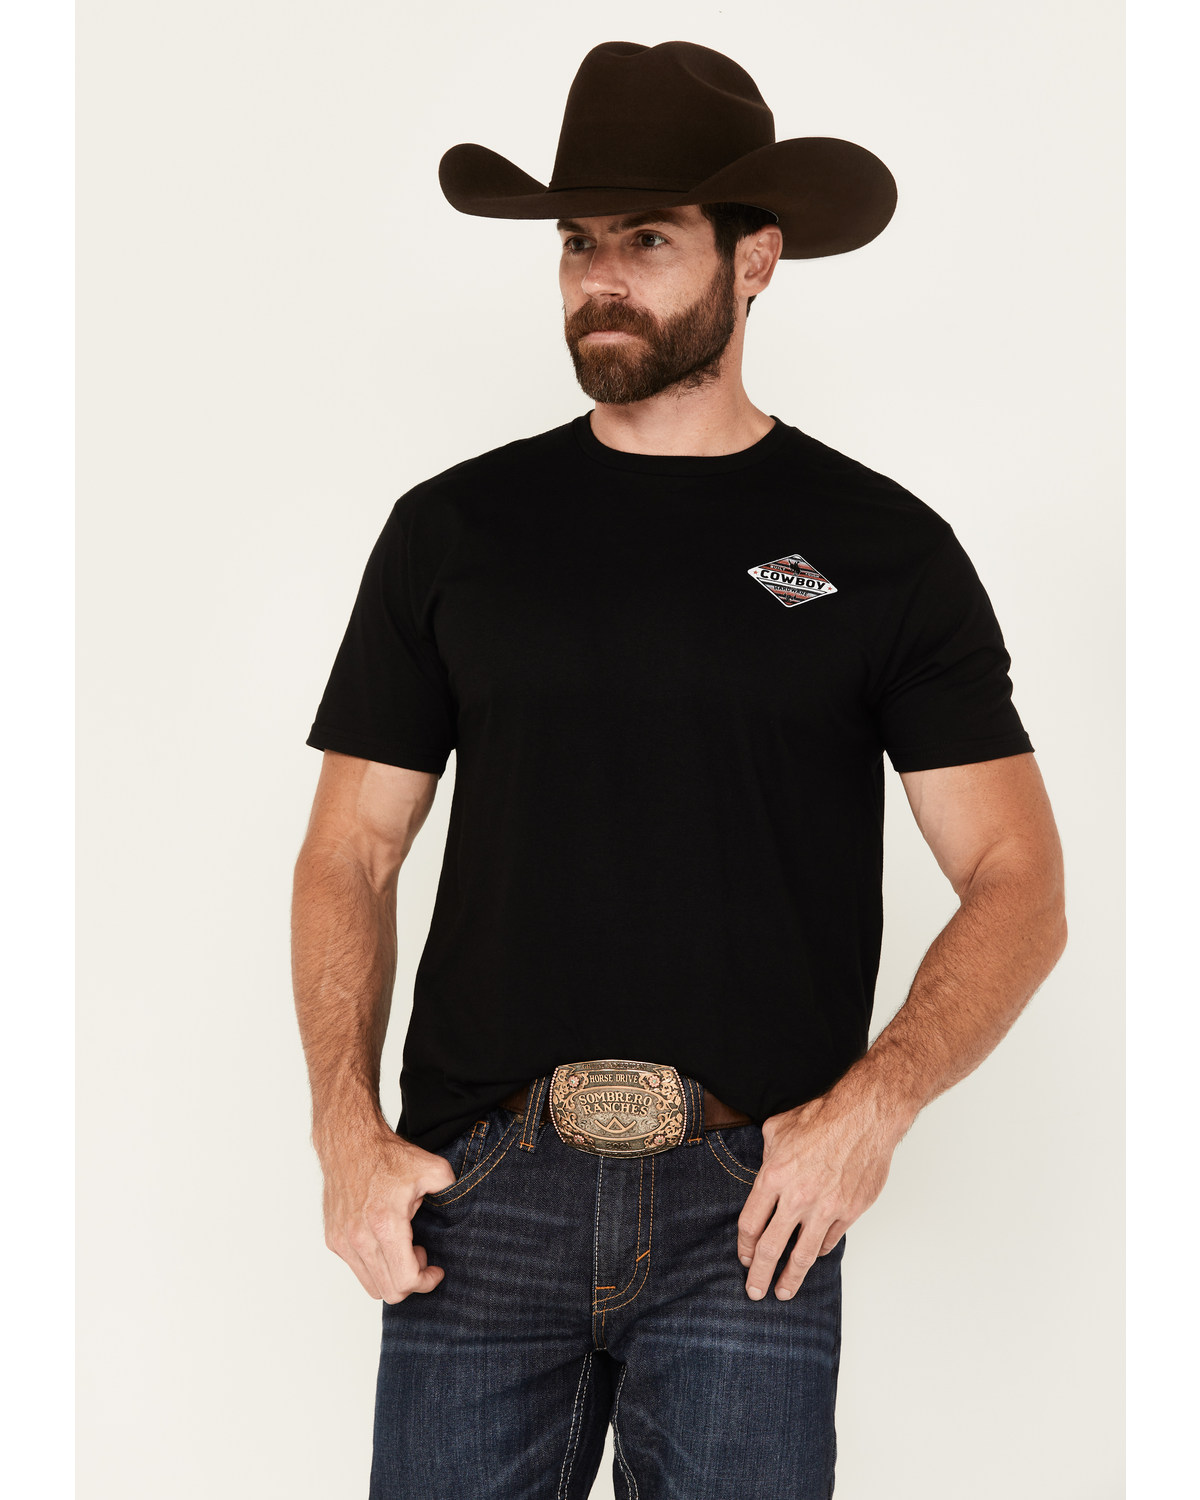 Cowboy Hardware Men's Built Tough Shield Short Sleeve Graphic T-Shirt